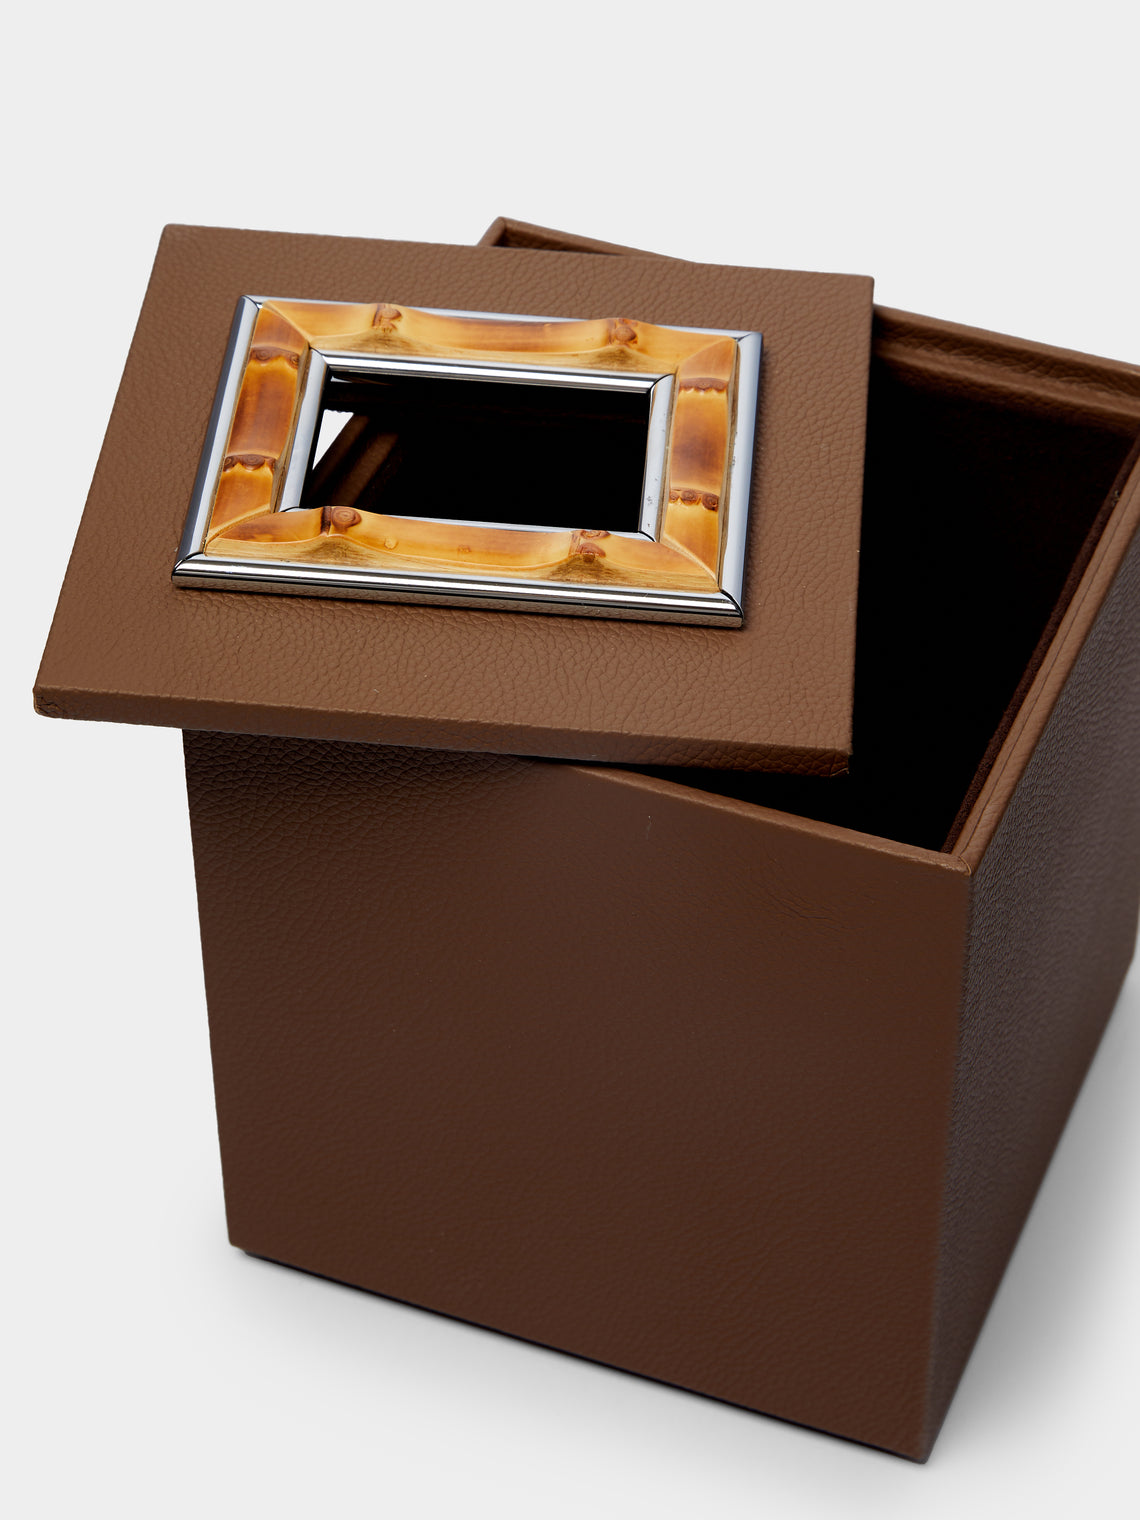 Lorenzi Milano - Bamboo and Leather Tissue Box -  - ABASK